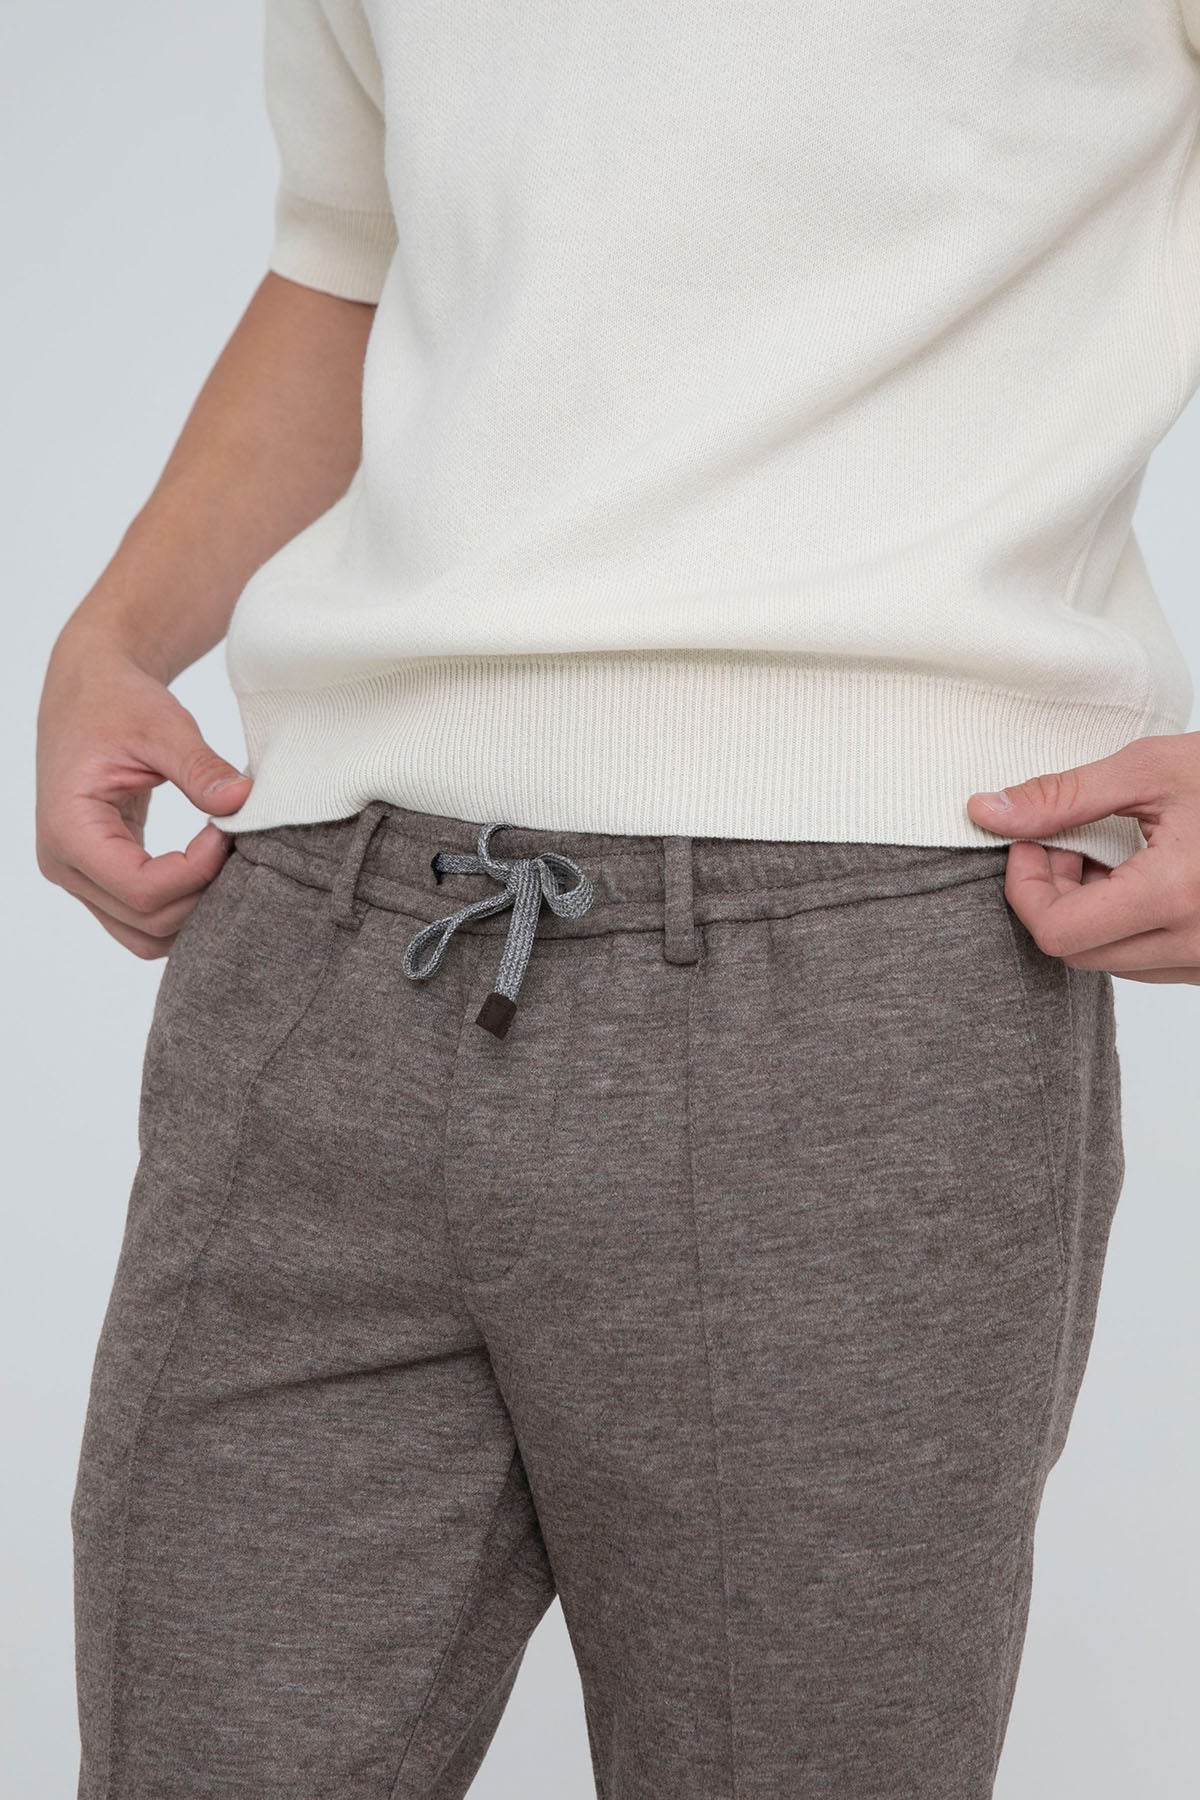 Fradi Beli Lastikli Slim Fit Jogger Pantolon-Libas Trendy Fashion Store